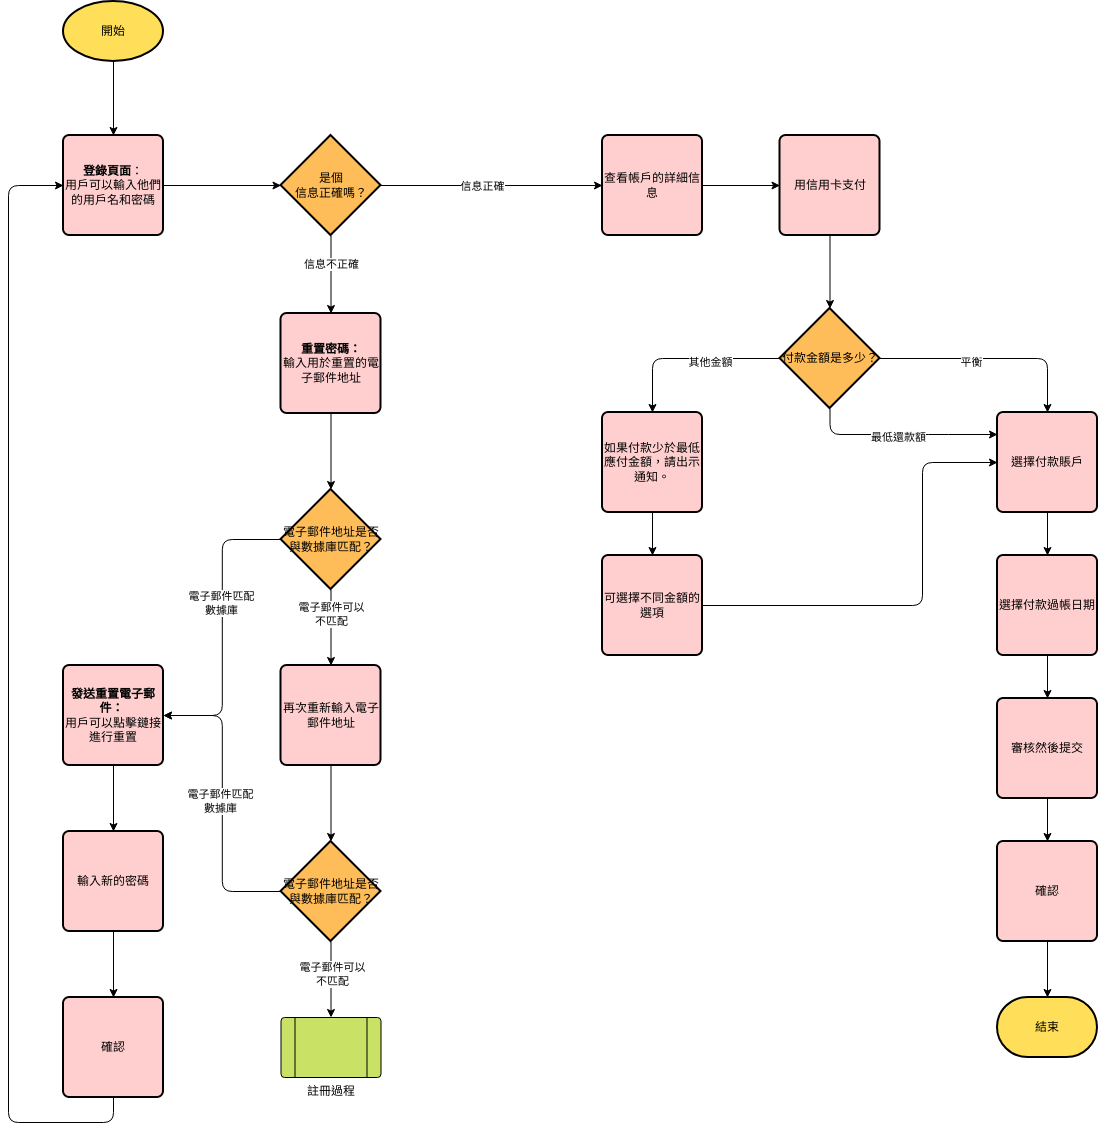 流程圖 模板。 流程圖示例：在線支付 (由 Visual Paradigm Online 的流程圖軟件製作)